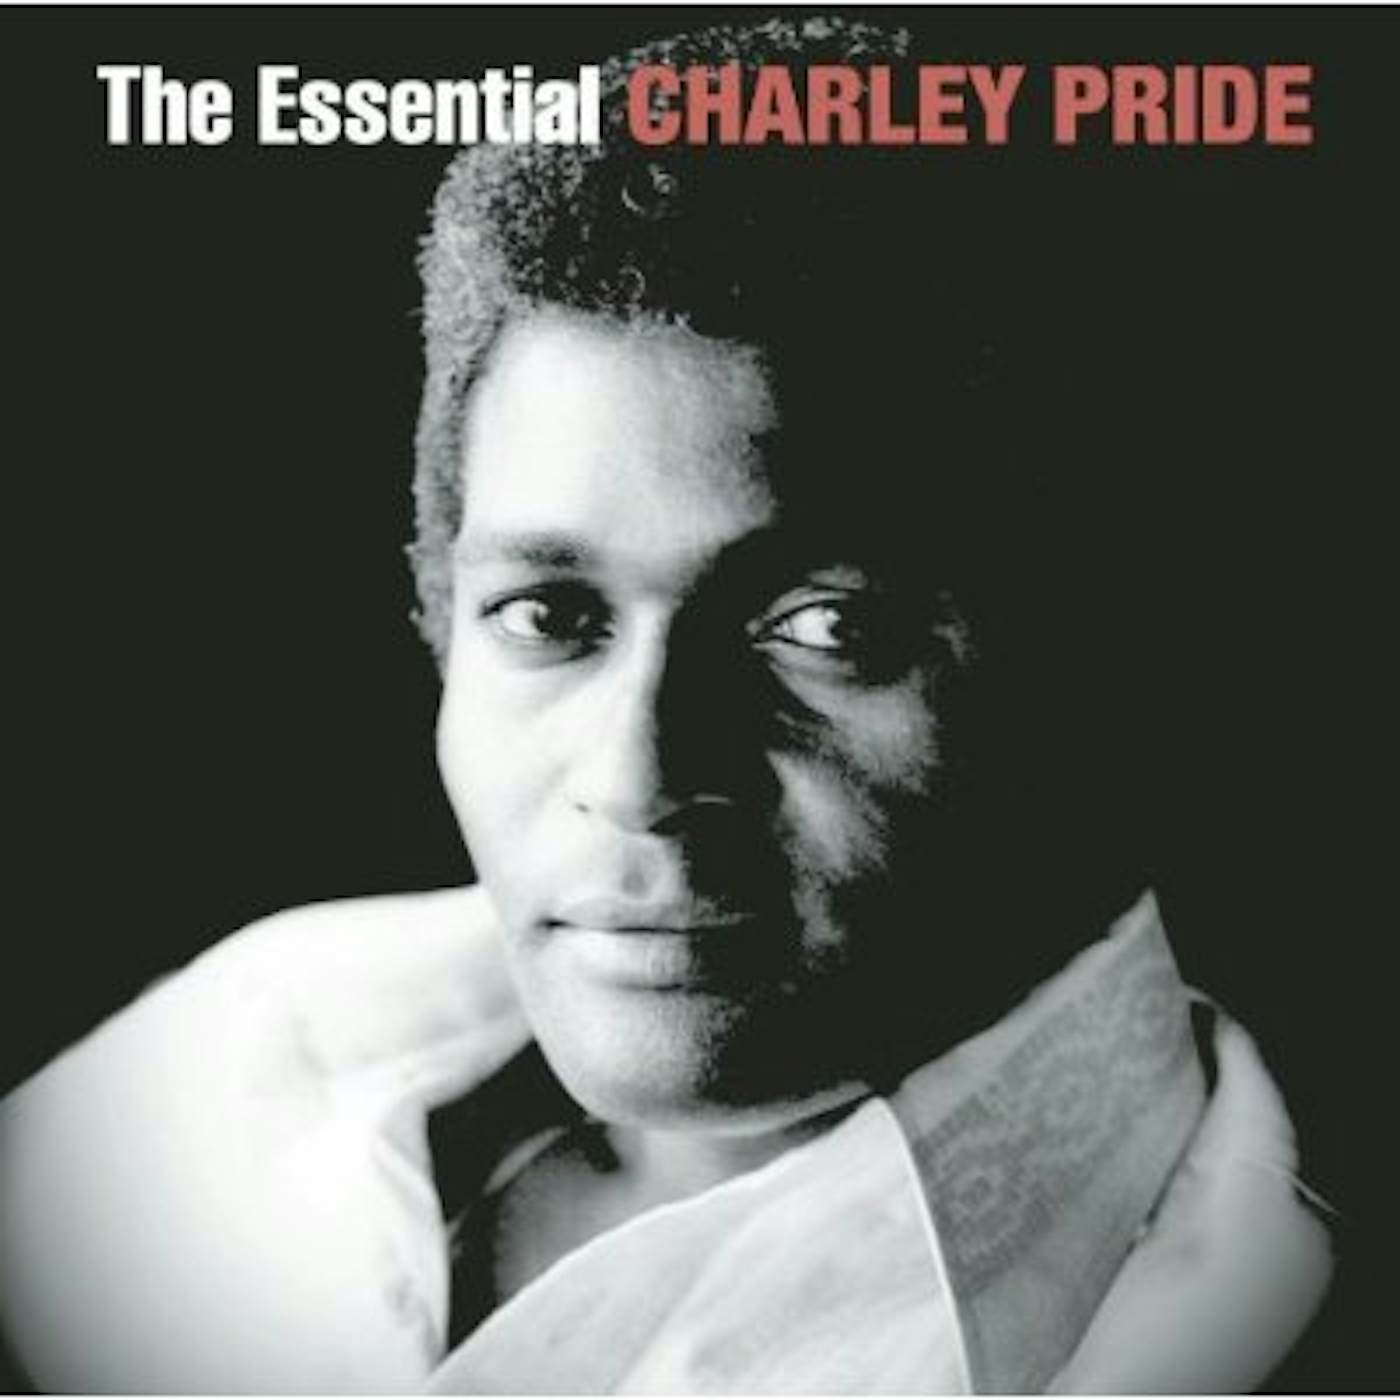 ESSENTIAL CHARLEY PRIDE CD